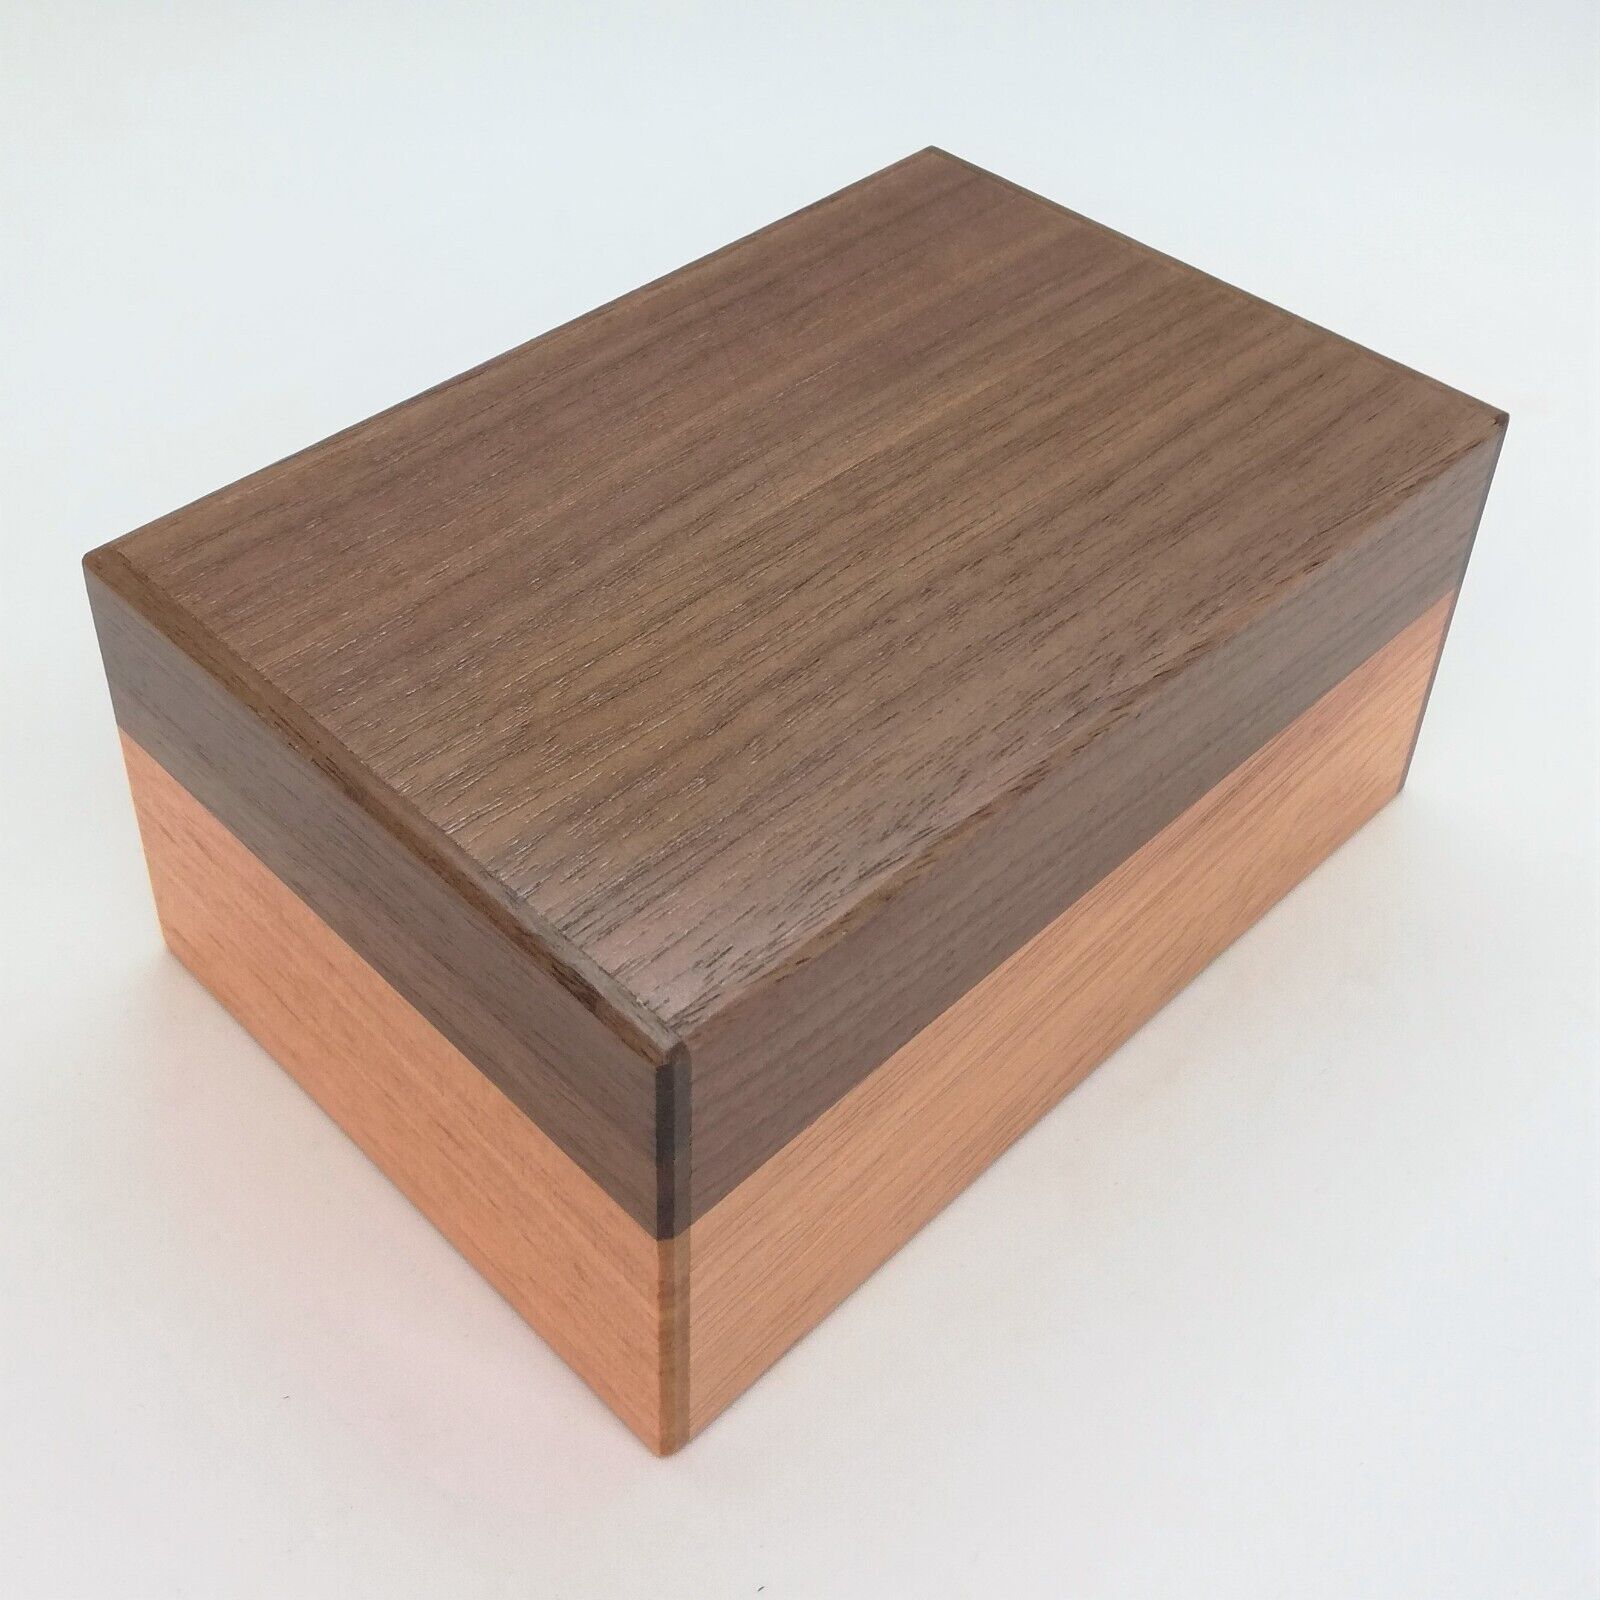 5 Sun 7 Steps Natural Wood Japanese Puzzle Box Himitsu-bako Made In Japan New